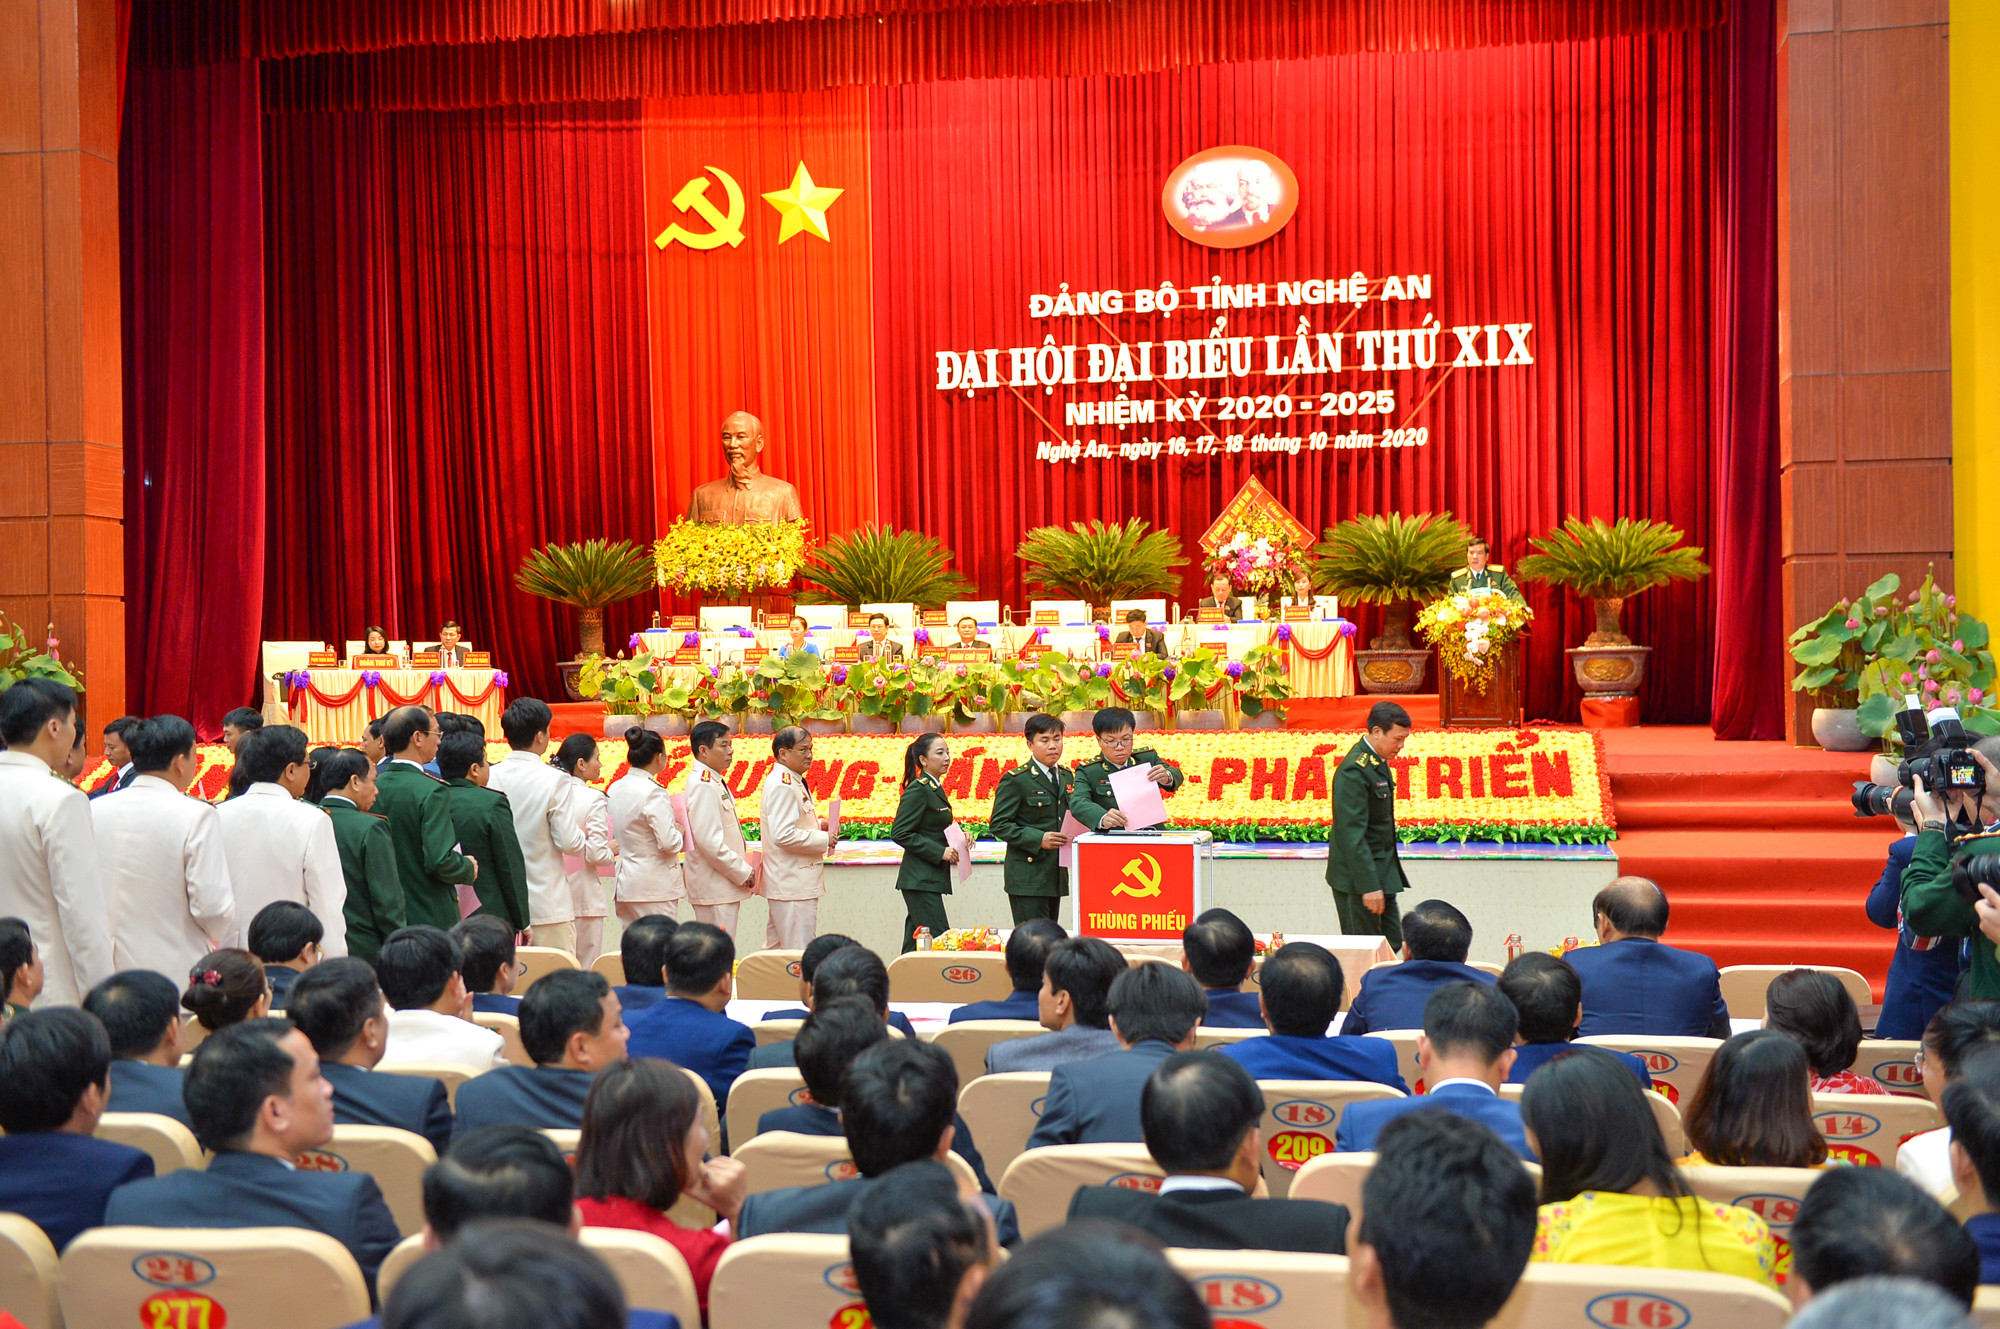 Các đại biểu bỏ phiếu tại Đại hội đại biểu Đảng bộ tỉnh Nghệ An lần thứ XIX. Ảnh tư liệu: Thành Cường